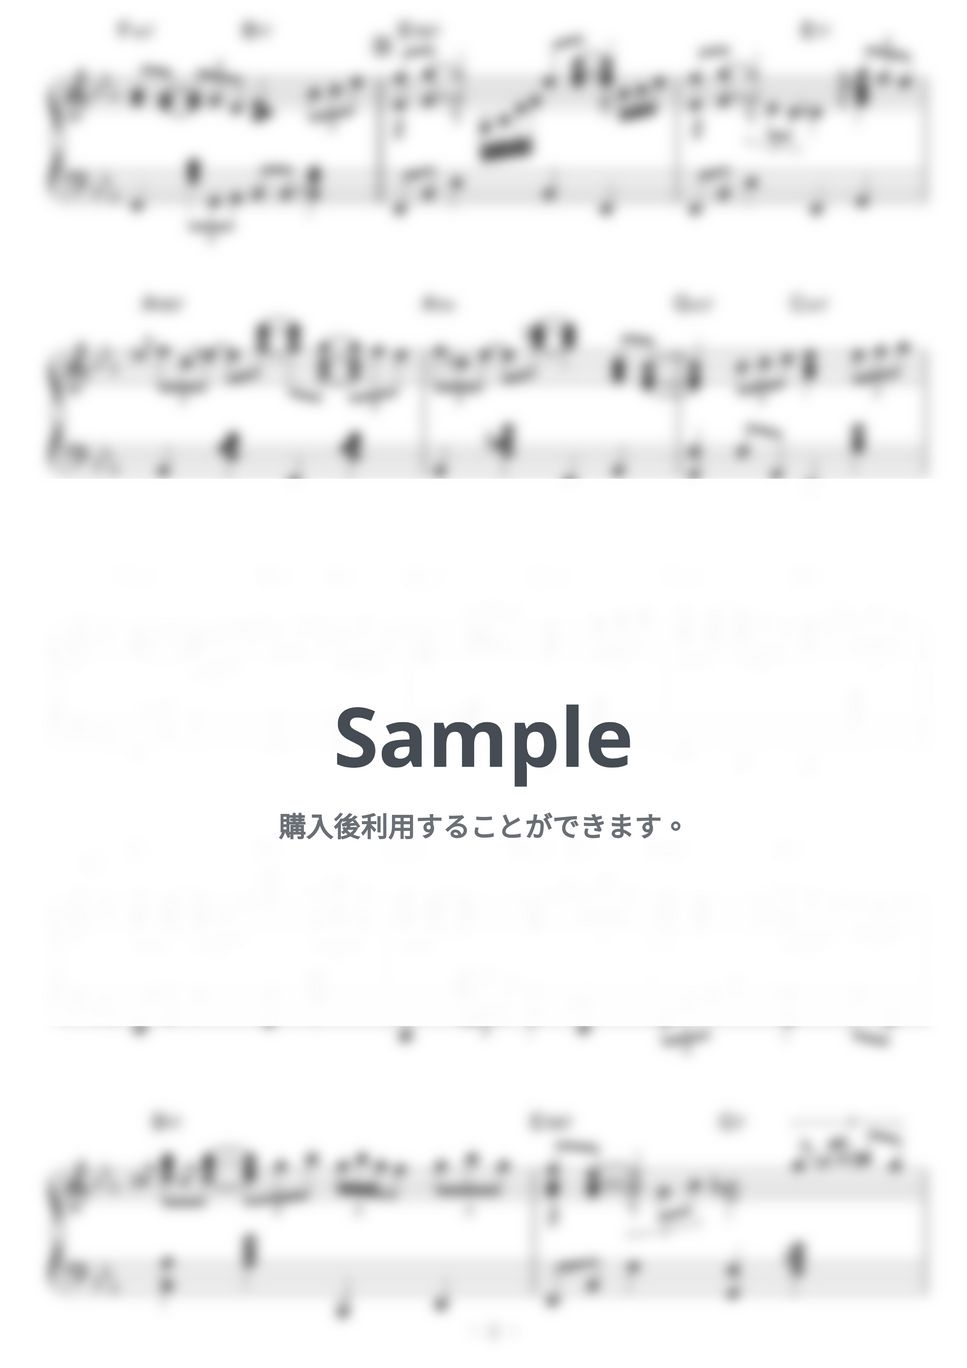 松田聖子 - SWEET MEMORIES (Jazz.ver) by piano*score